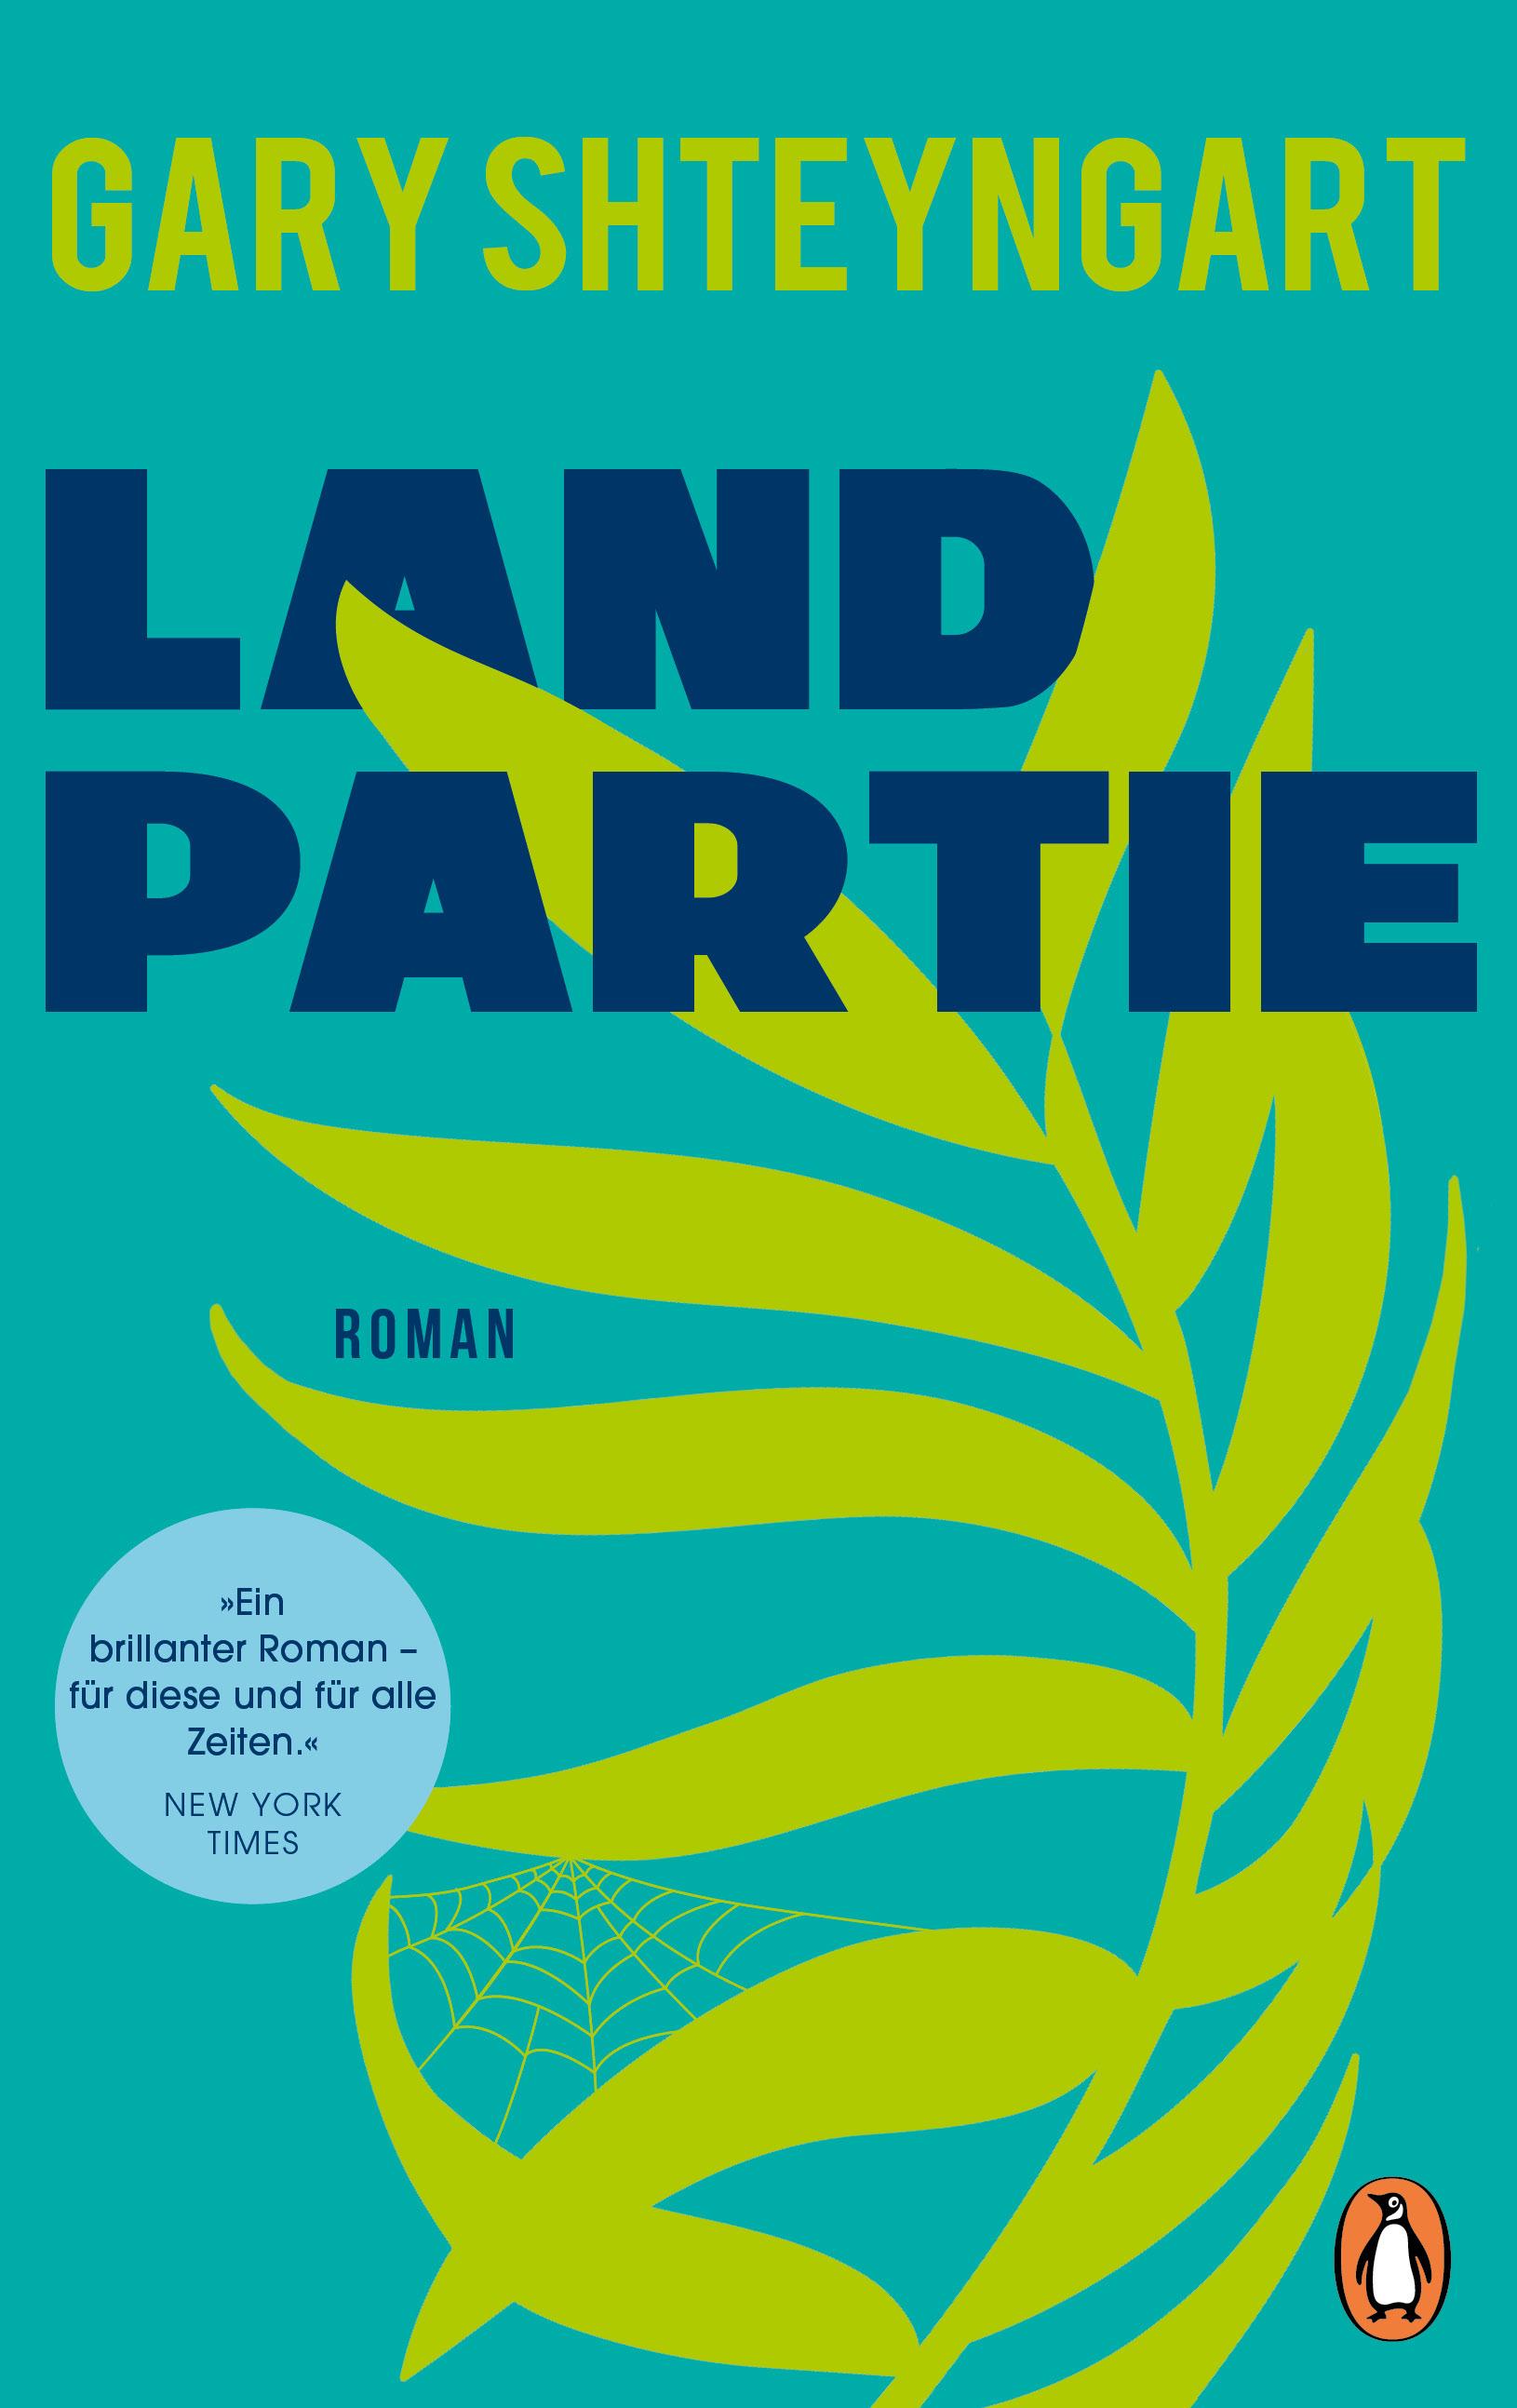 Gary Shteyngart: Landpartie (c) Penguin Verlag